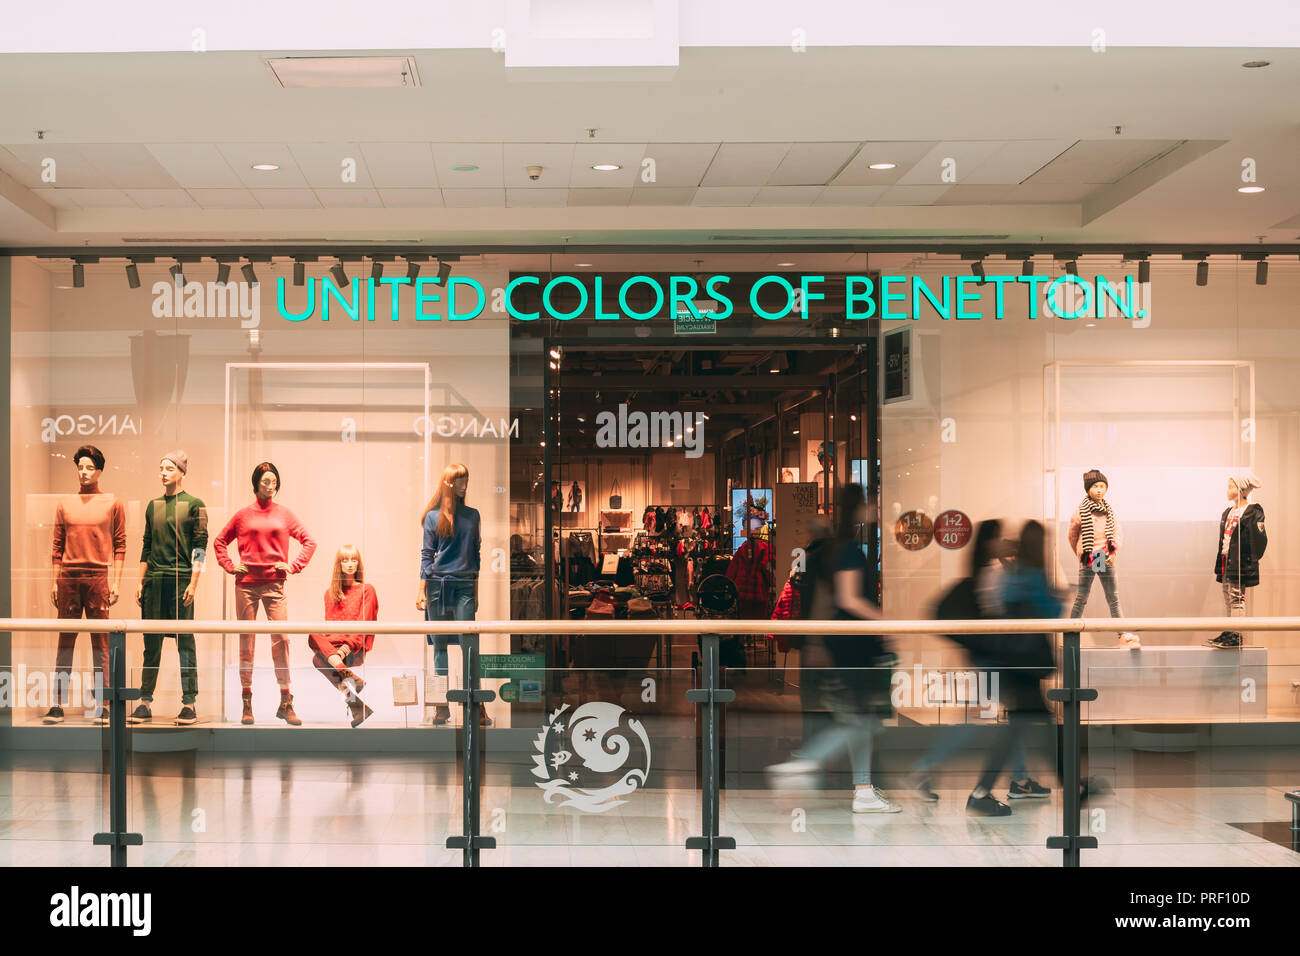 Warschau, Polen - 27. September 2018: die Menschen zu Fuß in der Nähe der  Vereinten Farben von Benetton Store in der Shopping Mall Stockfotografie -  Alamy